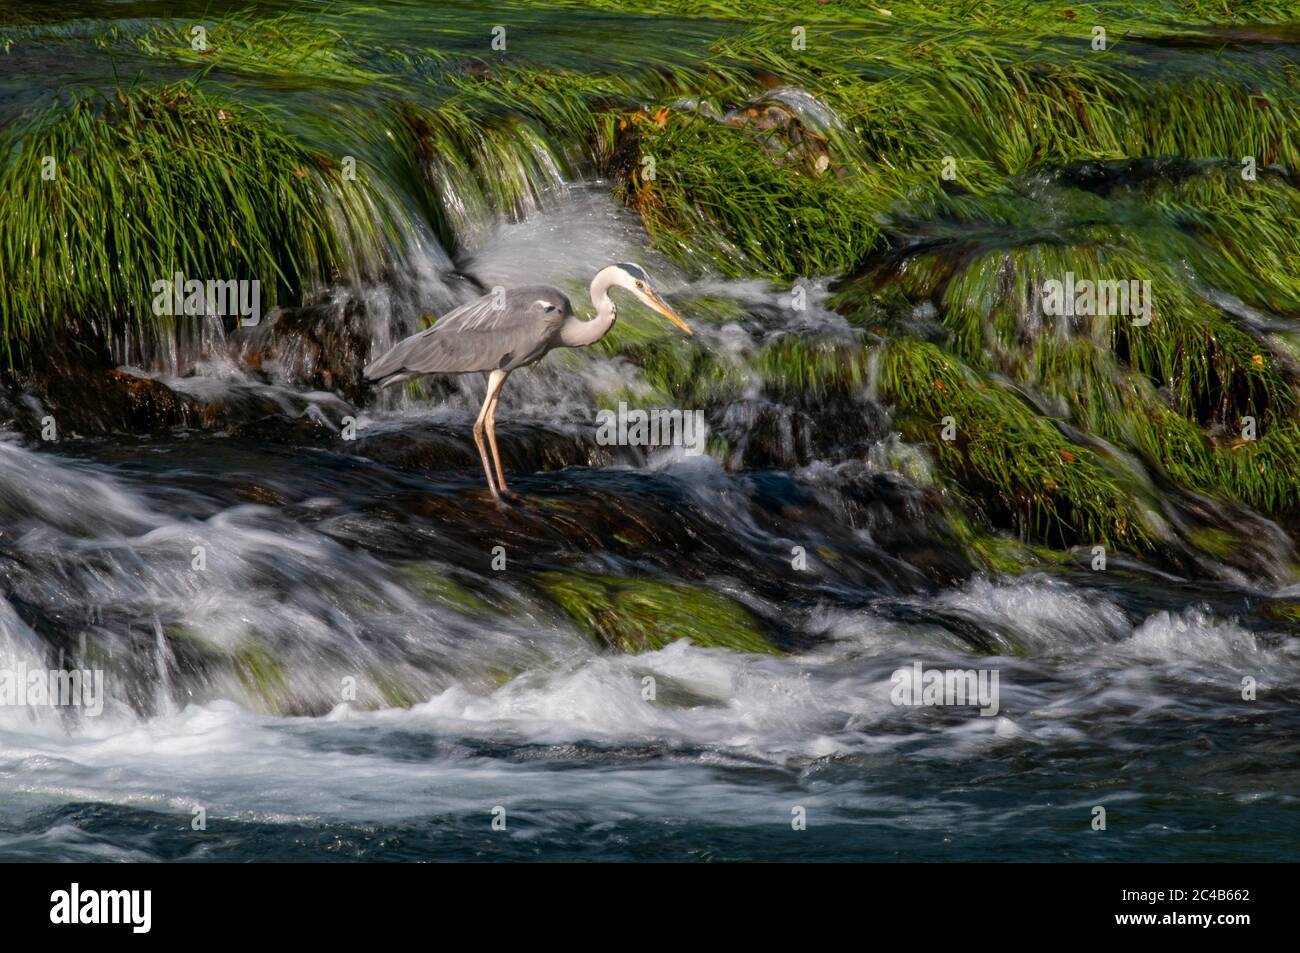 Héron gris (Ardea cinerea) pendant la pêche, rivière una, Bosanska Krupa, Bosnie-Herzégovine Banque D'Images